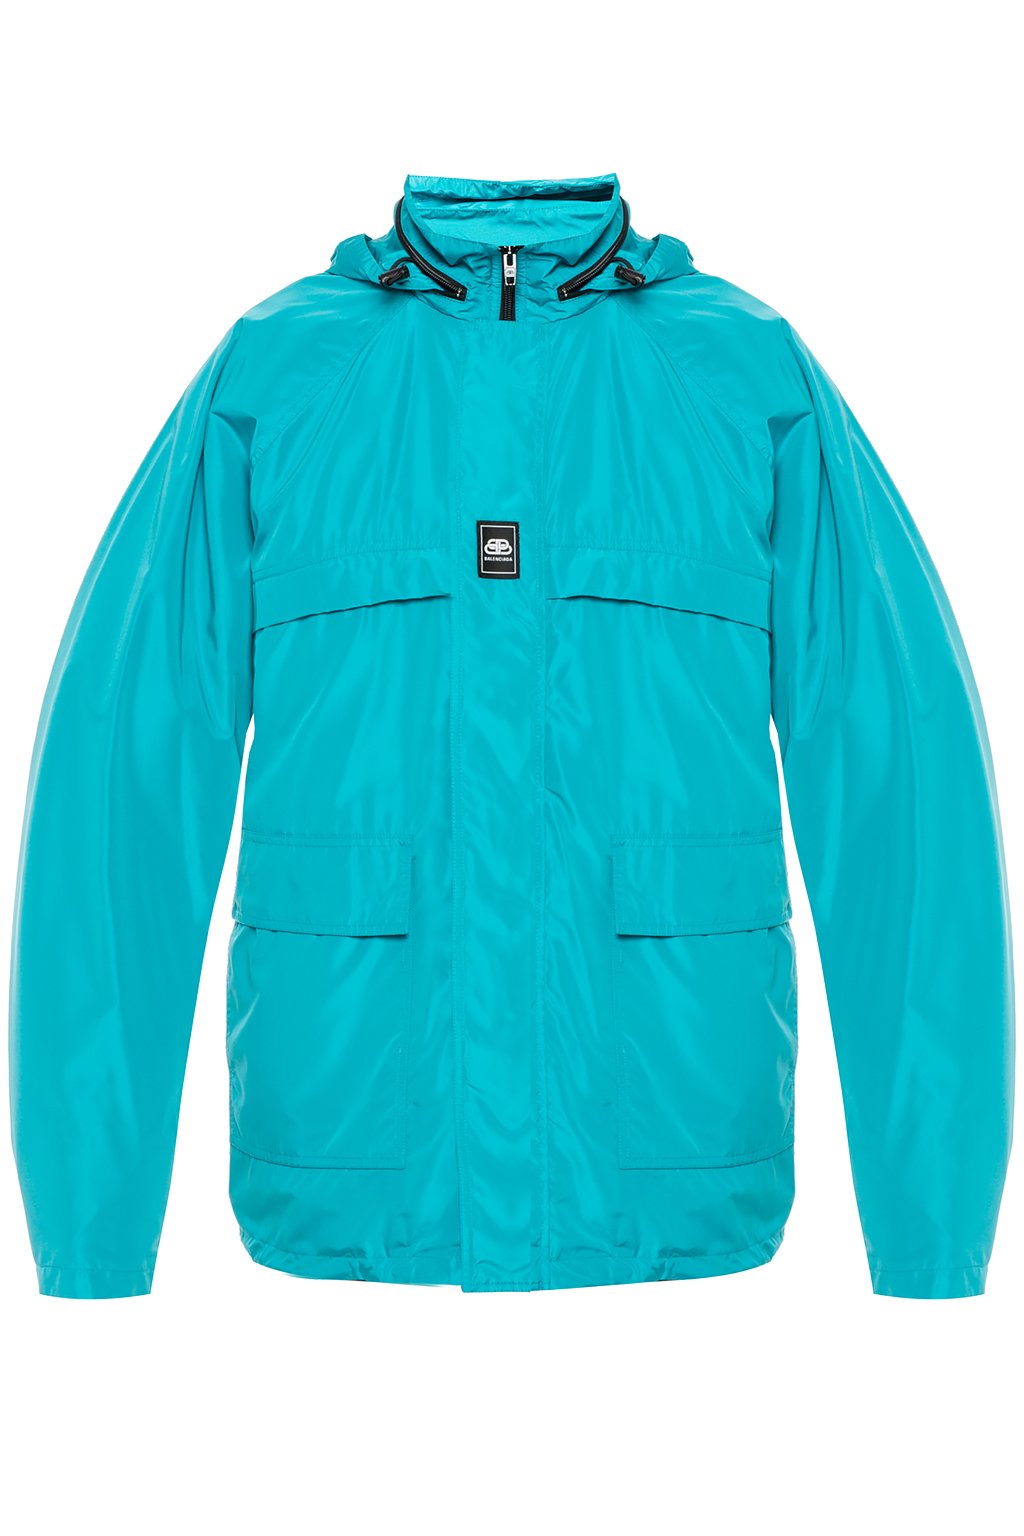 Balenciaga Windproof Jacket Clothing Turquoise